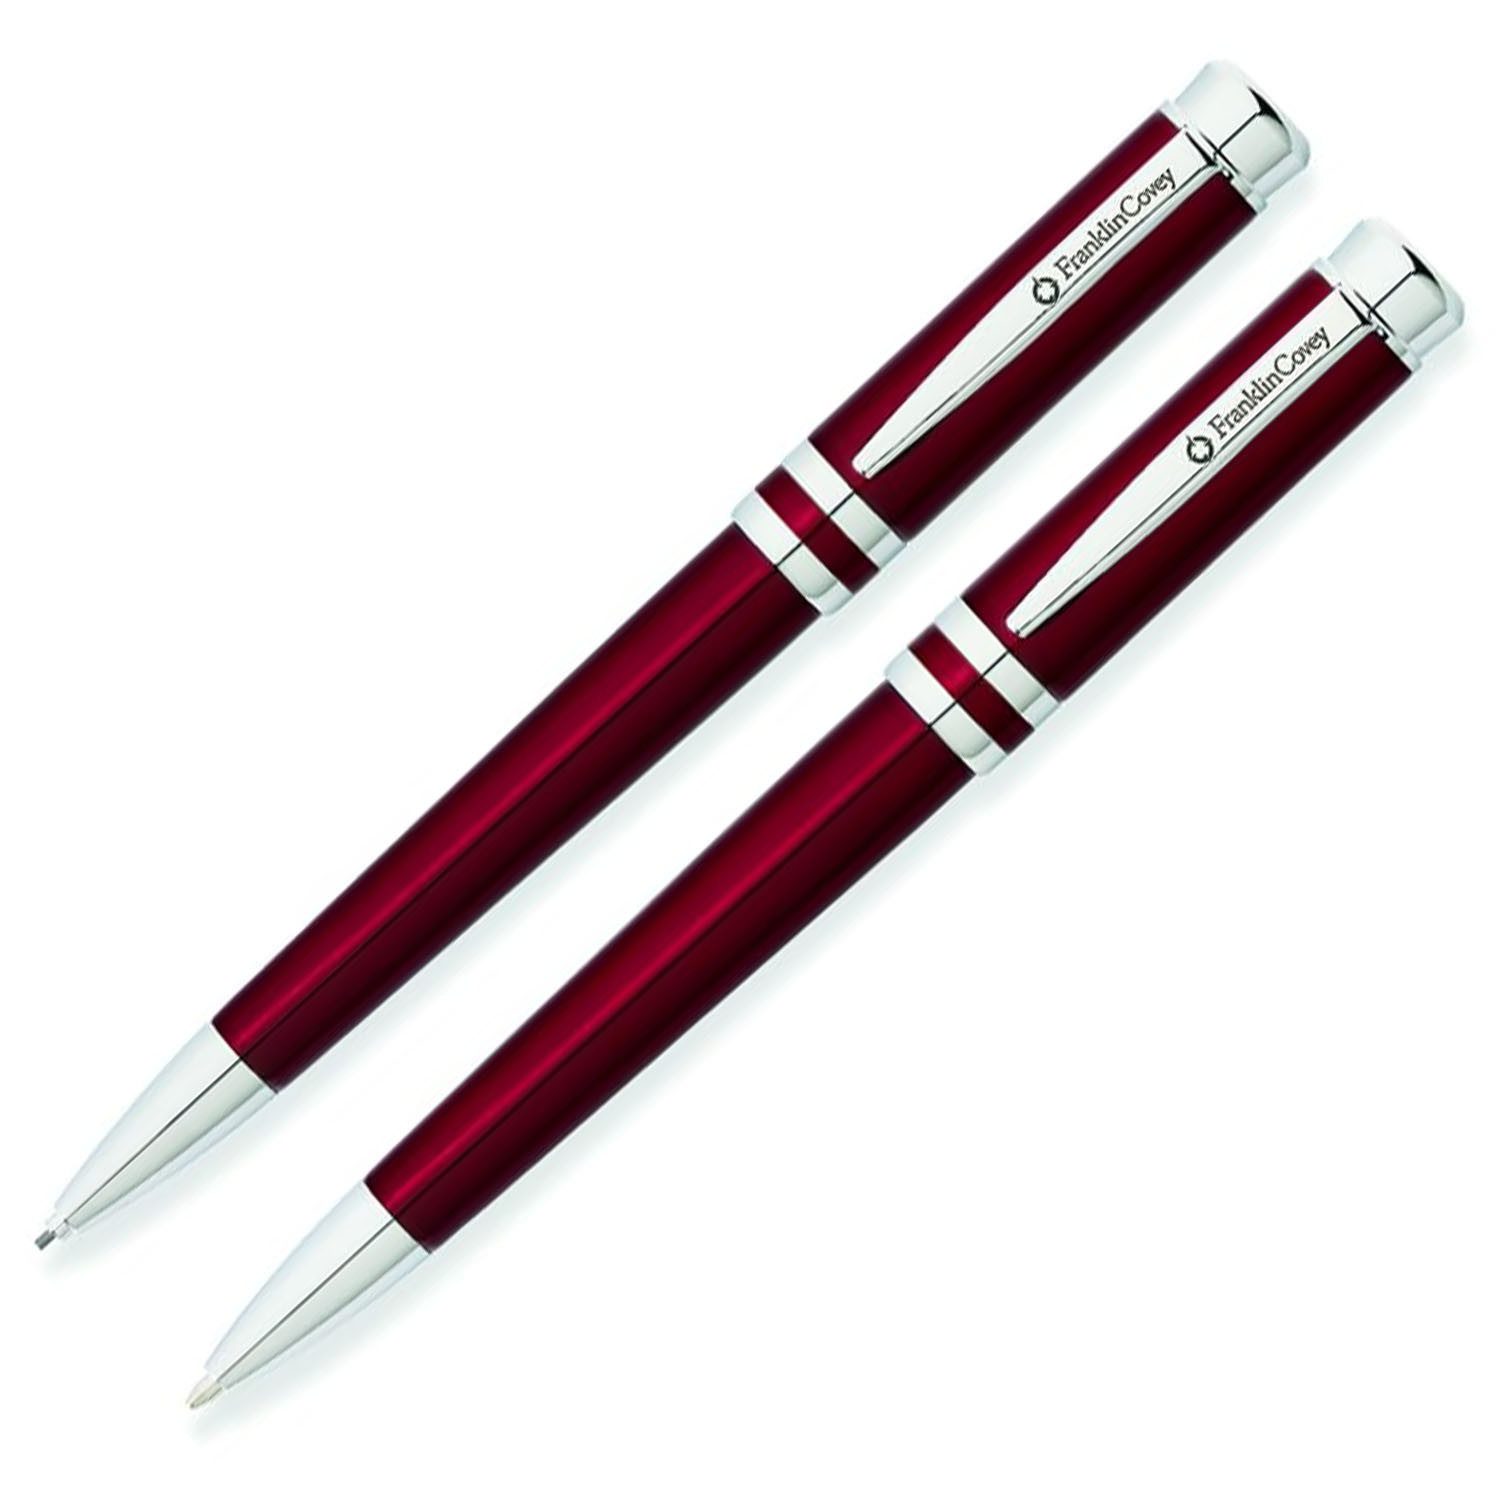 CROSS-USA Kugelschreiber CROSS Freemont Schreibgeräteset Rot-Lack, Kugelschreiber und Bleistift